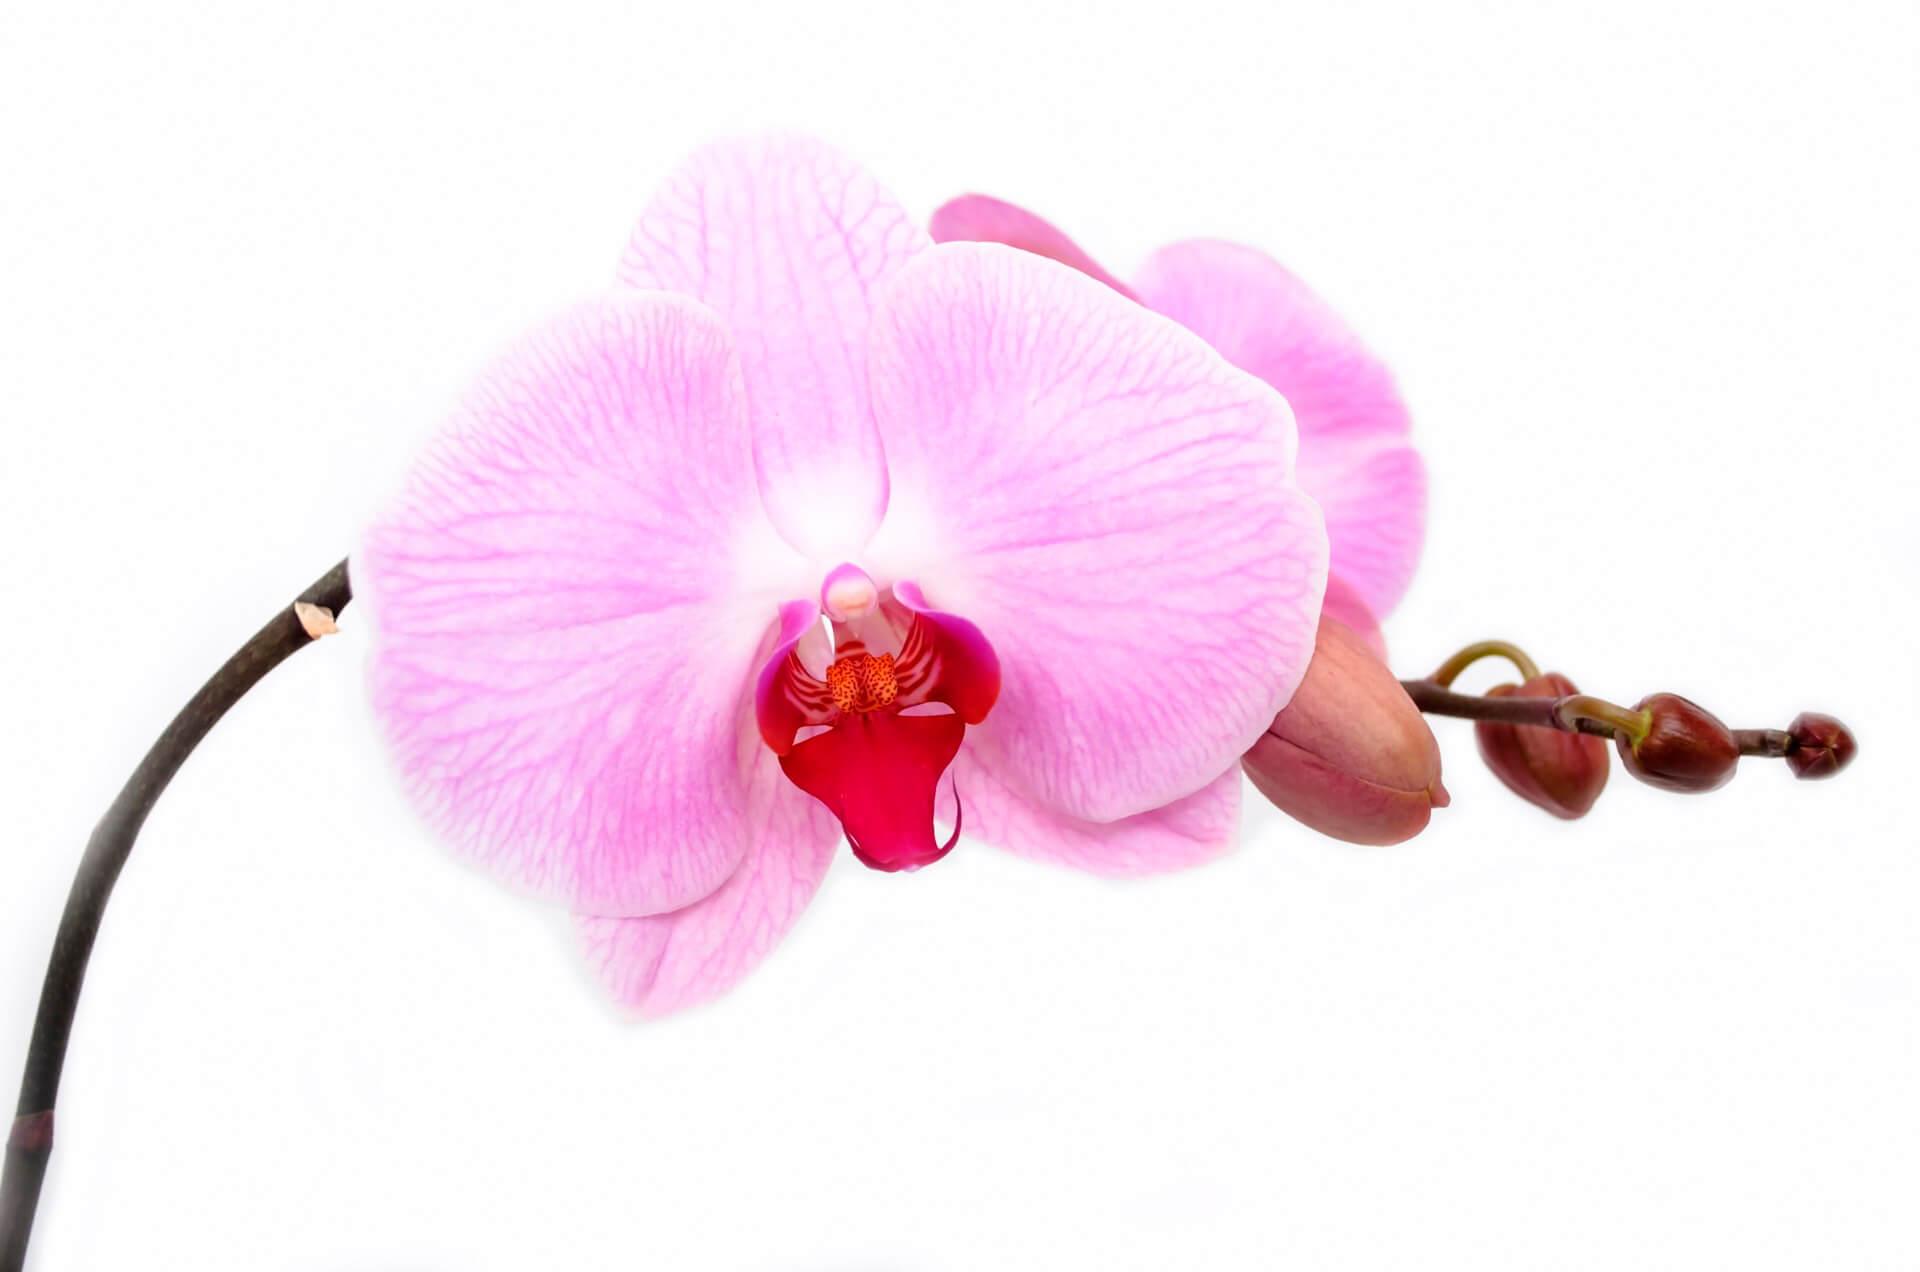 Zweig der rosafarbenen Orchidee